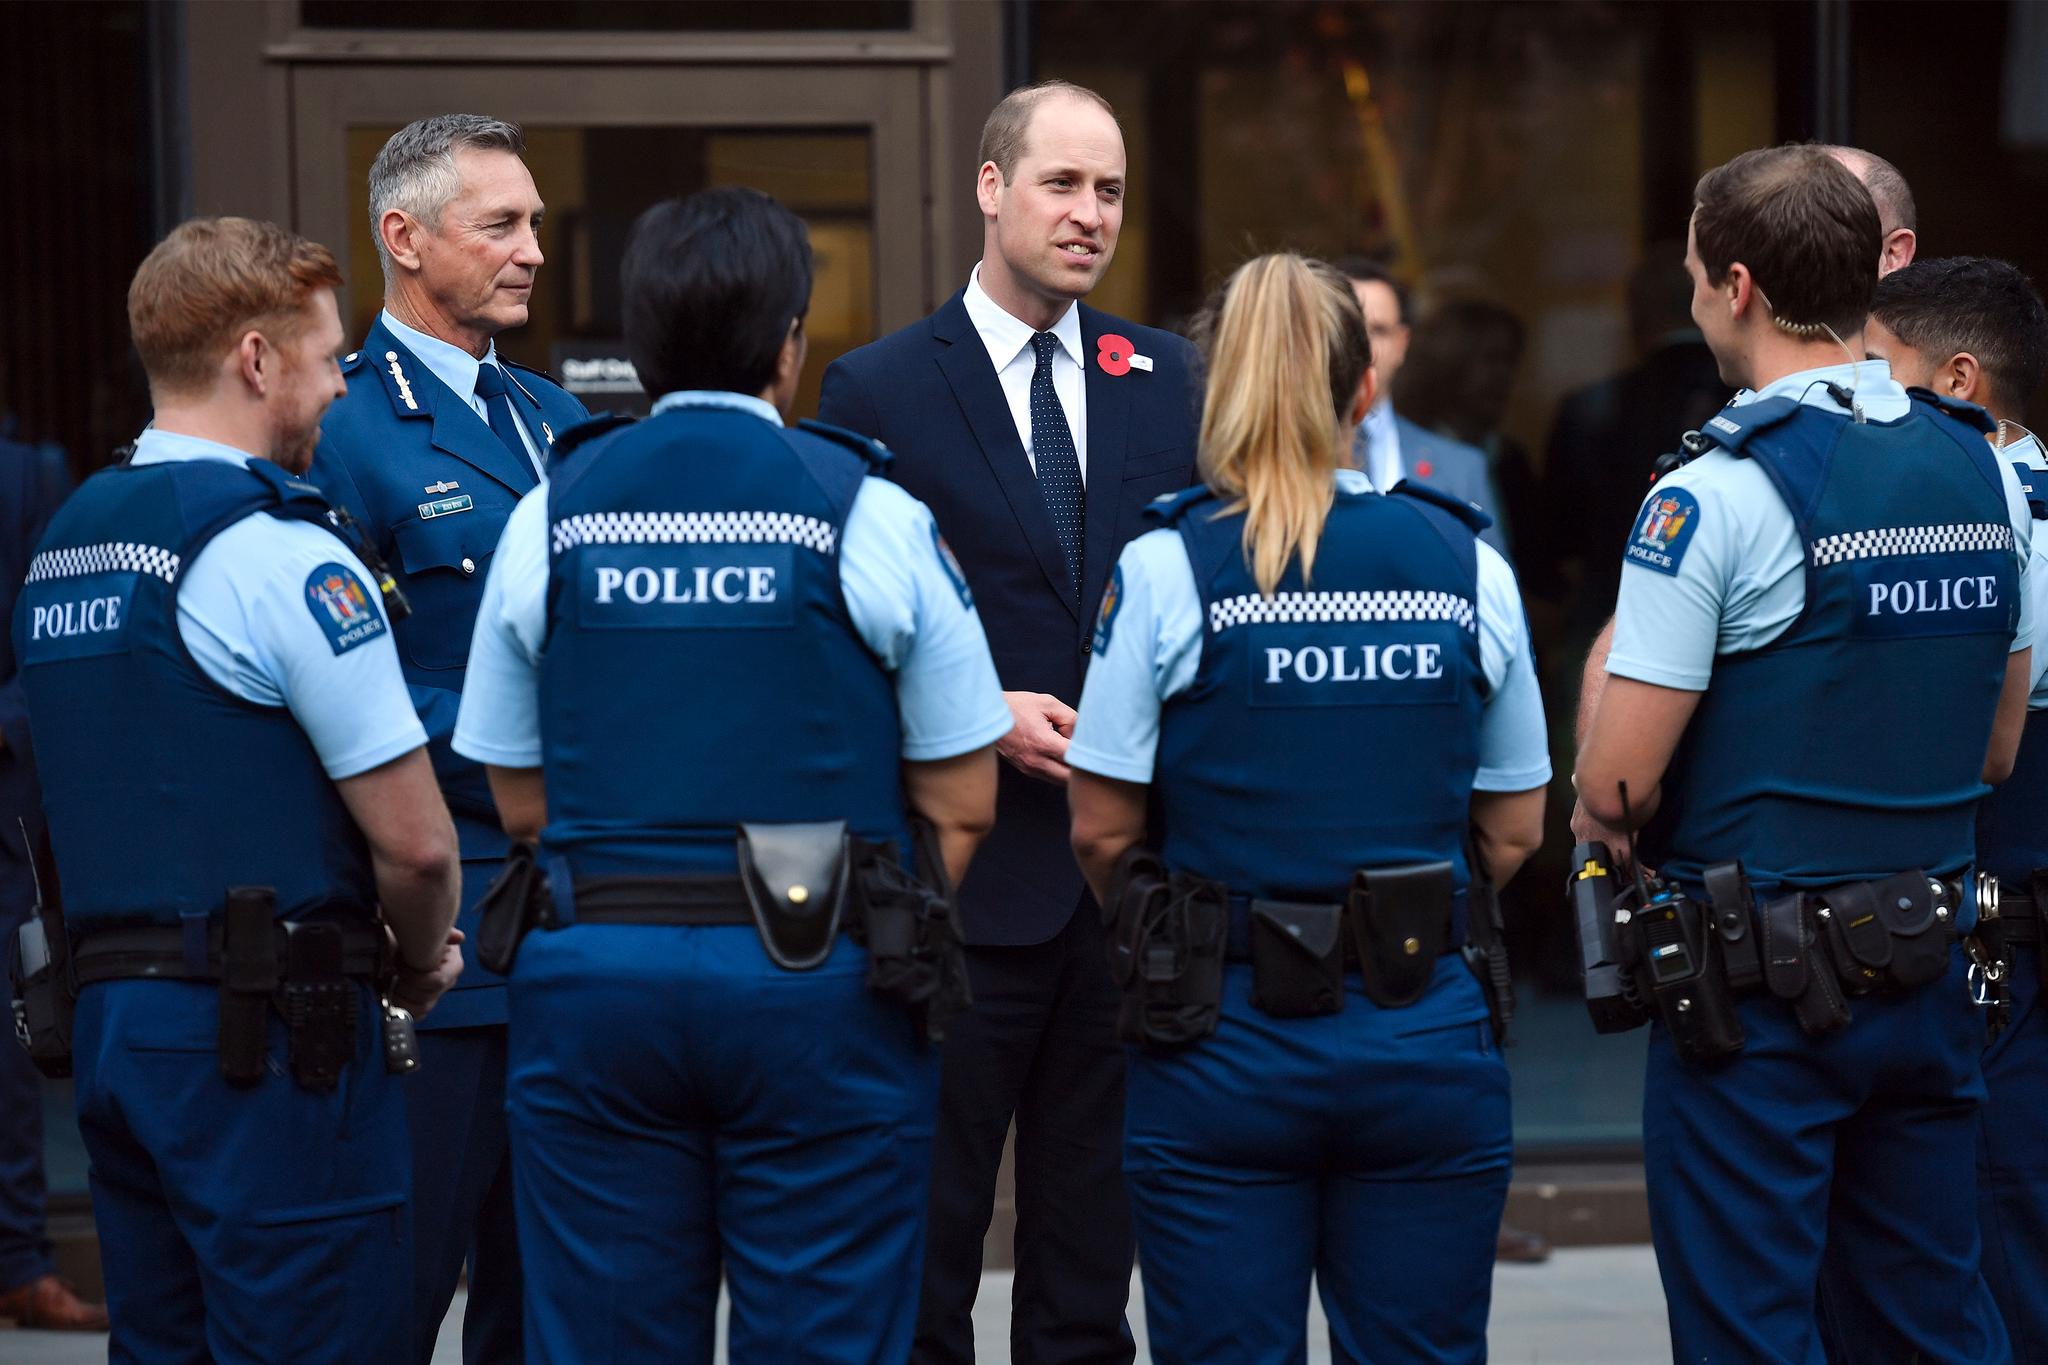 Storbritannias prins William besøkte torsdag Christchurch på New Zealand, der han blant andre møtte representanter for nødetatene som rykket ut til terrorangrepene der 50 mennesker ble skutt og drept i to moskeer 15. mars. 